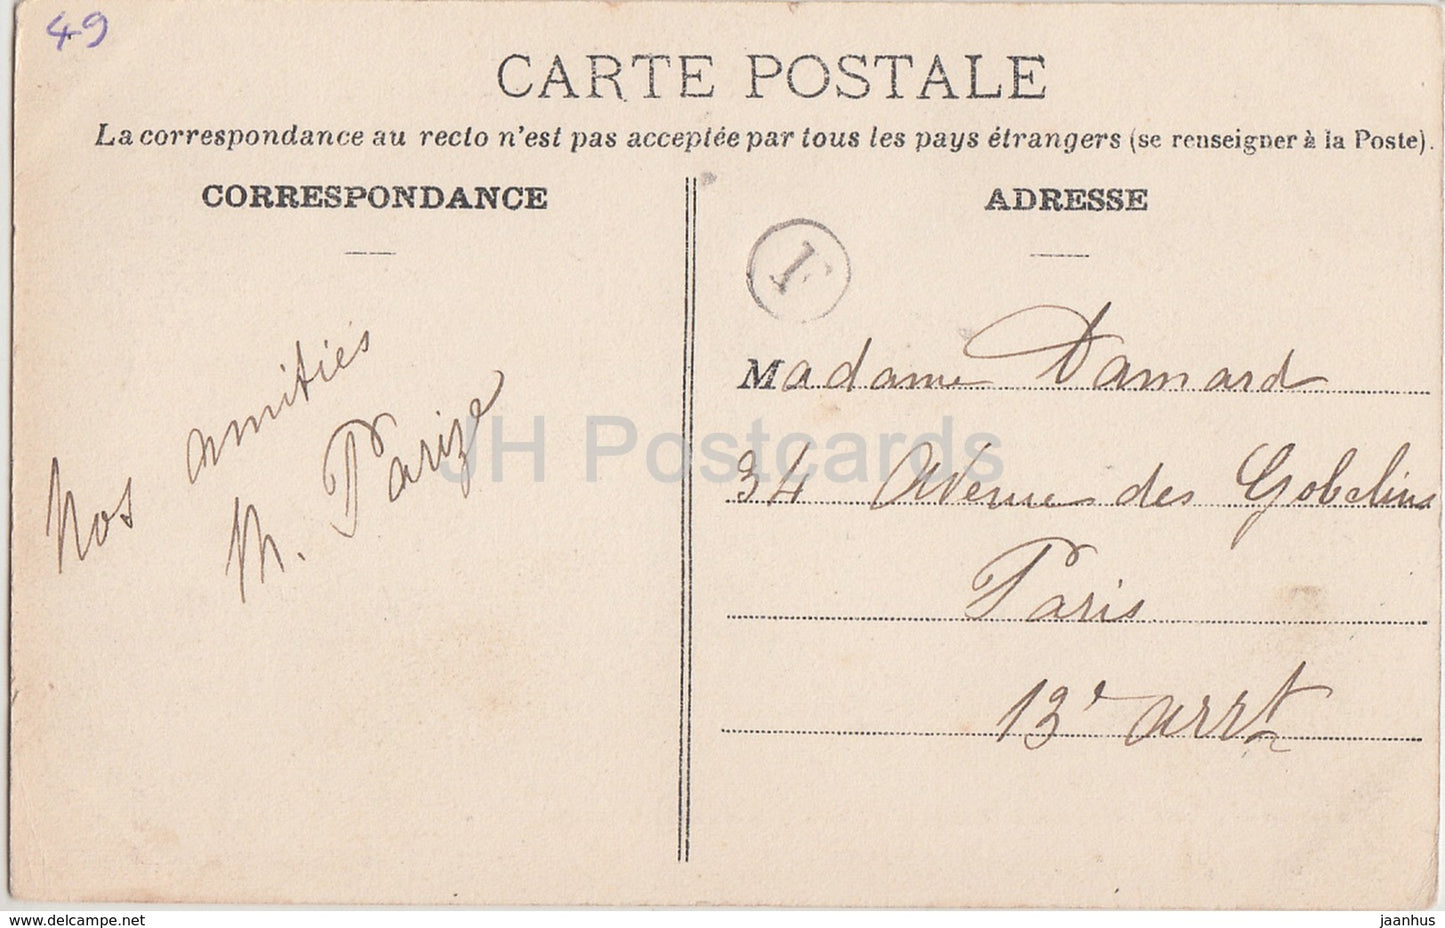 Saint Sauveur de Flee - Chateau du Houssay - castle - 219 - 1907 - old postcard - France - used